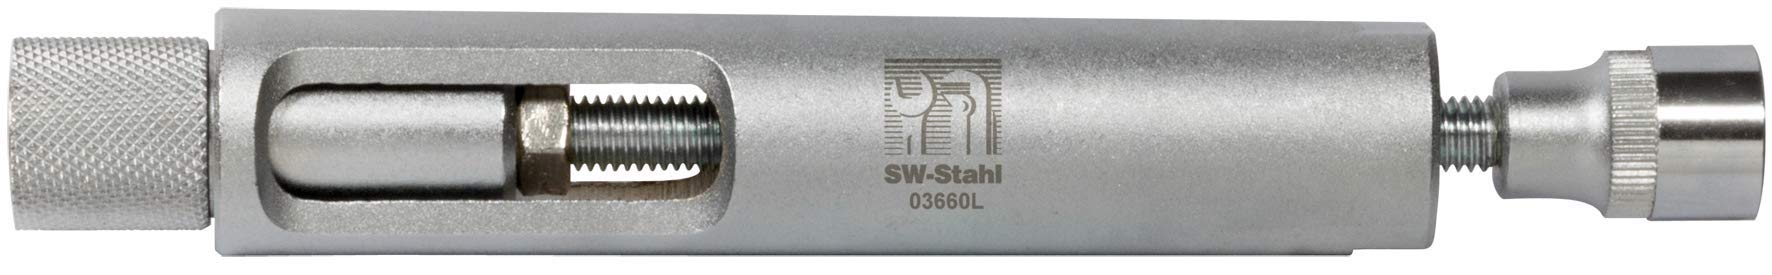 SW-Stahl Glühkerzen Ausziehwerkzeug, 03660L von SW-Stahl